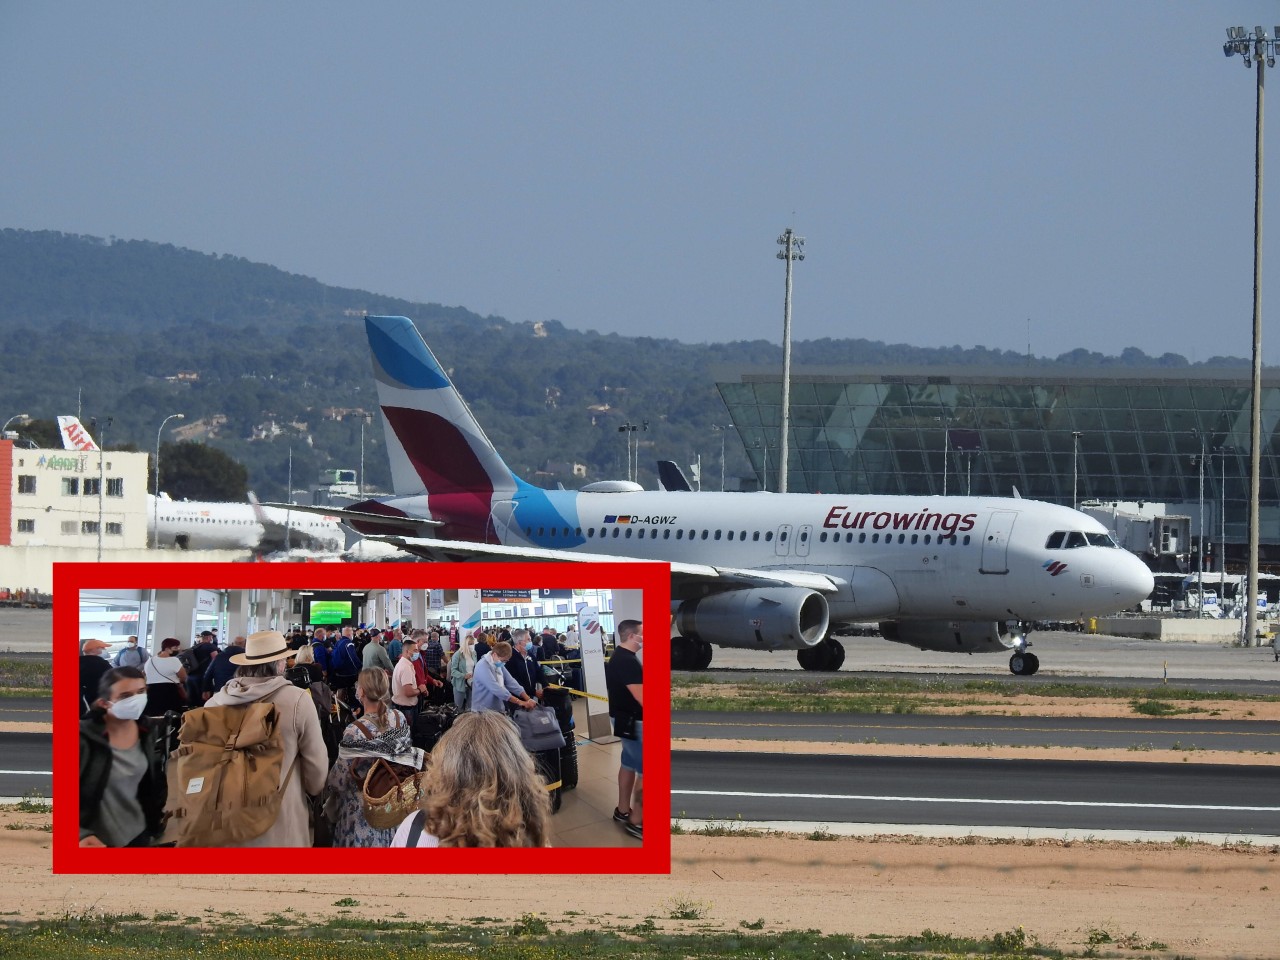 Am Flughafen Palma de Mallorca musste am Freitag ein Flieger notlanden. Plötzlich liefen die Menschen über die Landebahn. (Archivbild)